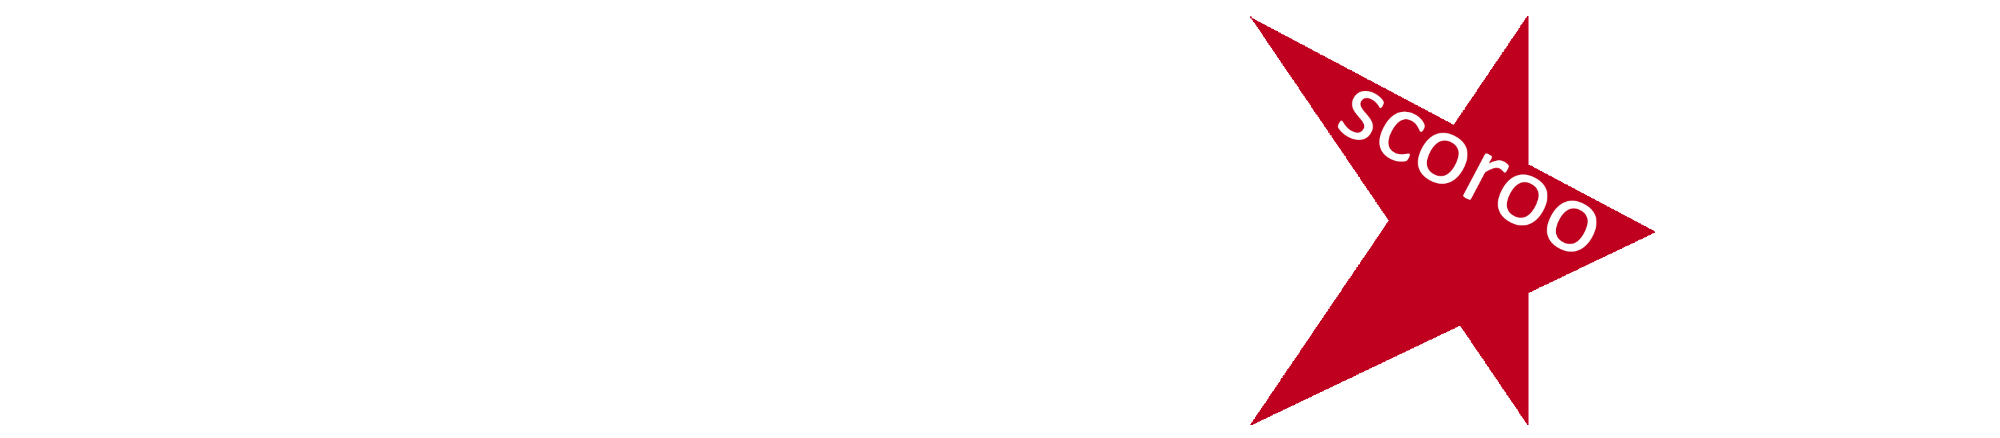 SCOROO Logo